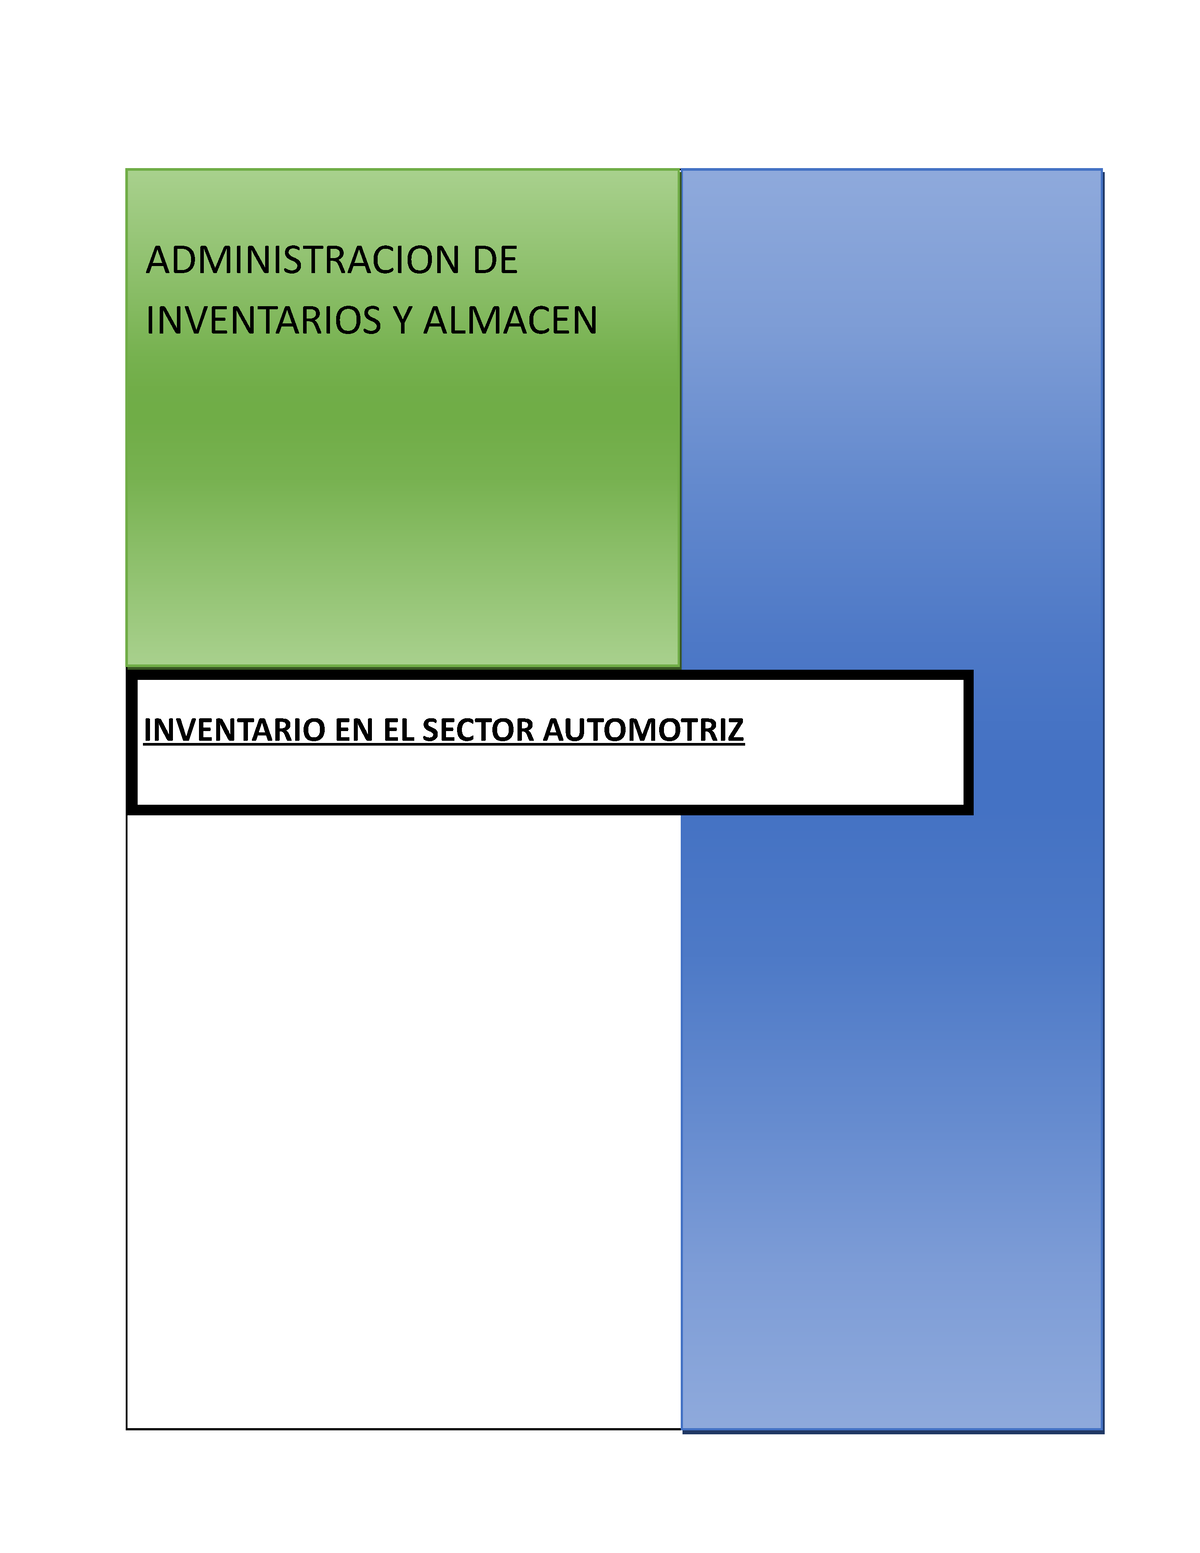 Ea2 Apoyo Inventario En El Sector Automotriz Administracion De Inventarios Y Almacen 6903